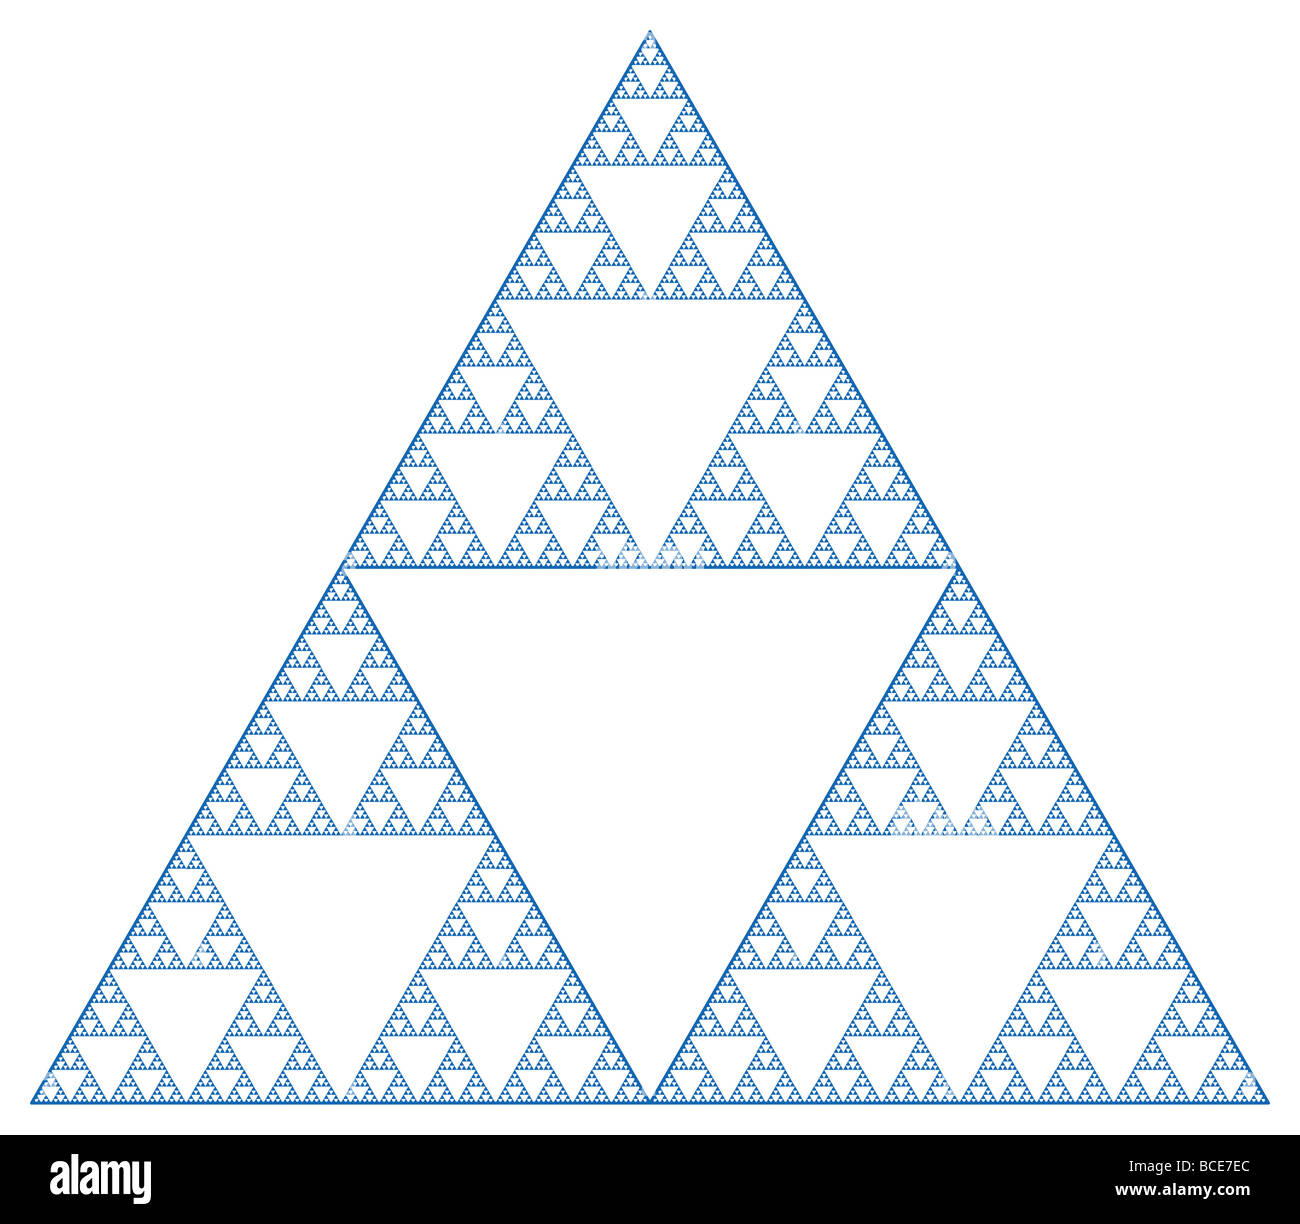 Eine Sierpinski Dichtung erfolgt durch ein gleichseitiges Dreieck in vier Teilen, entfernen der Mitte ein und wiederholen Sie das Muster. Stockfoto